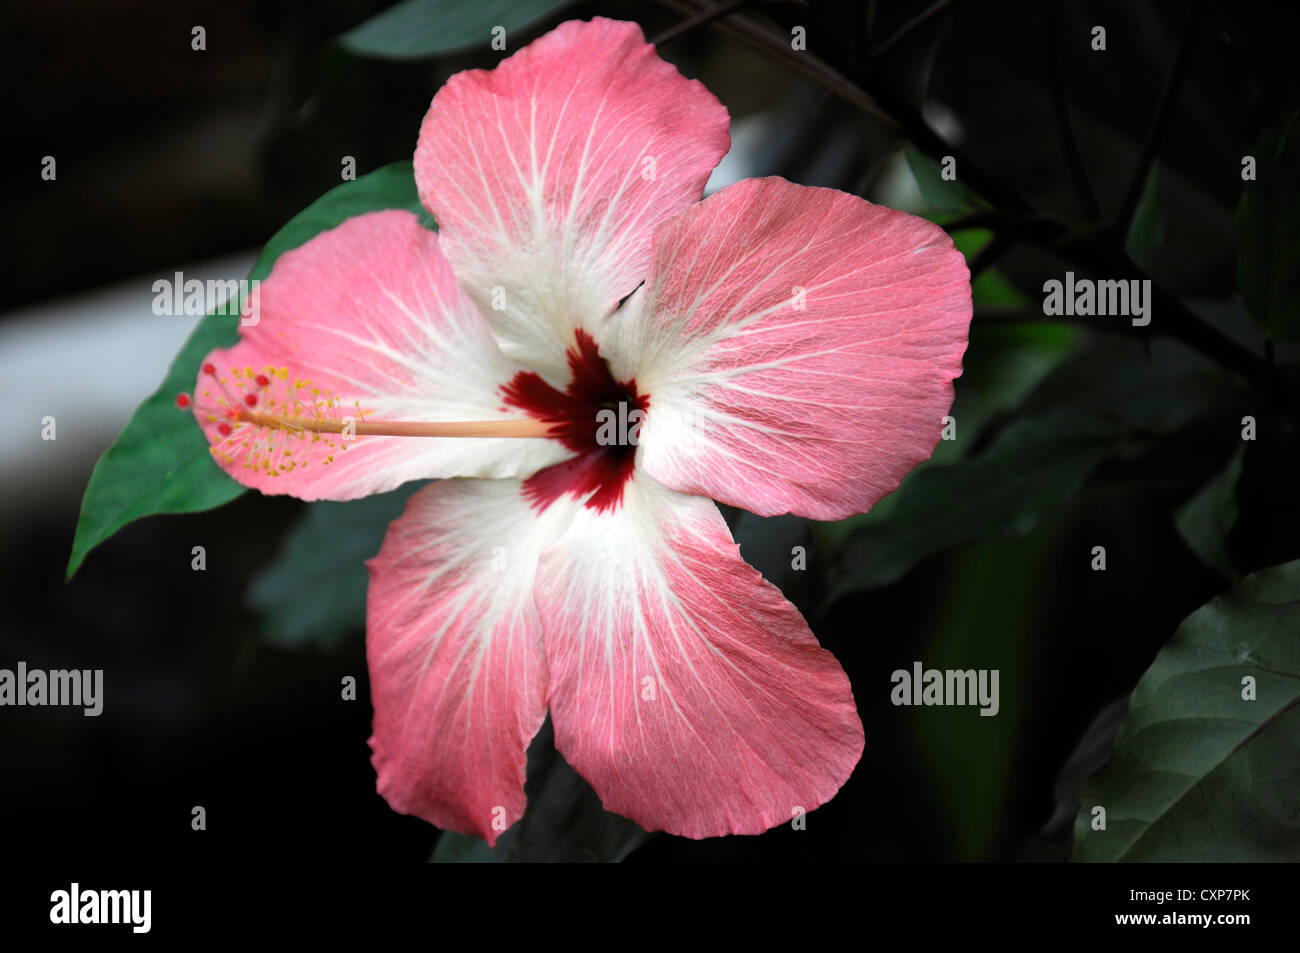 Storckii Hibiscus fleurs plantes vivaces arbustes portraits libre blanc rose tropical exotique bicolore Banque D'Images